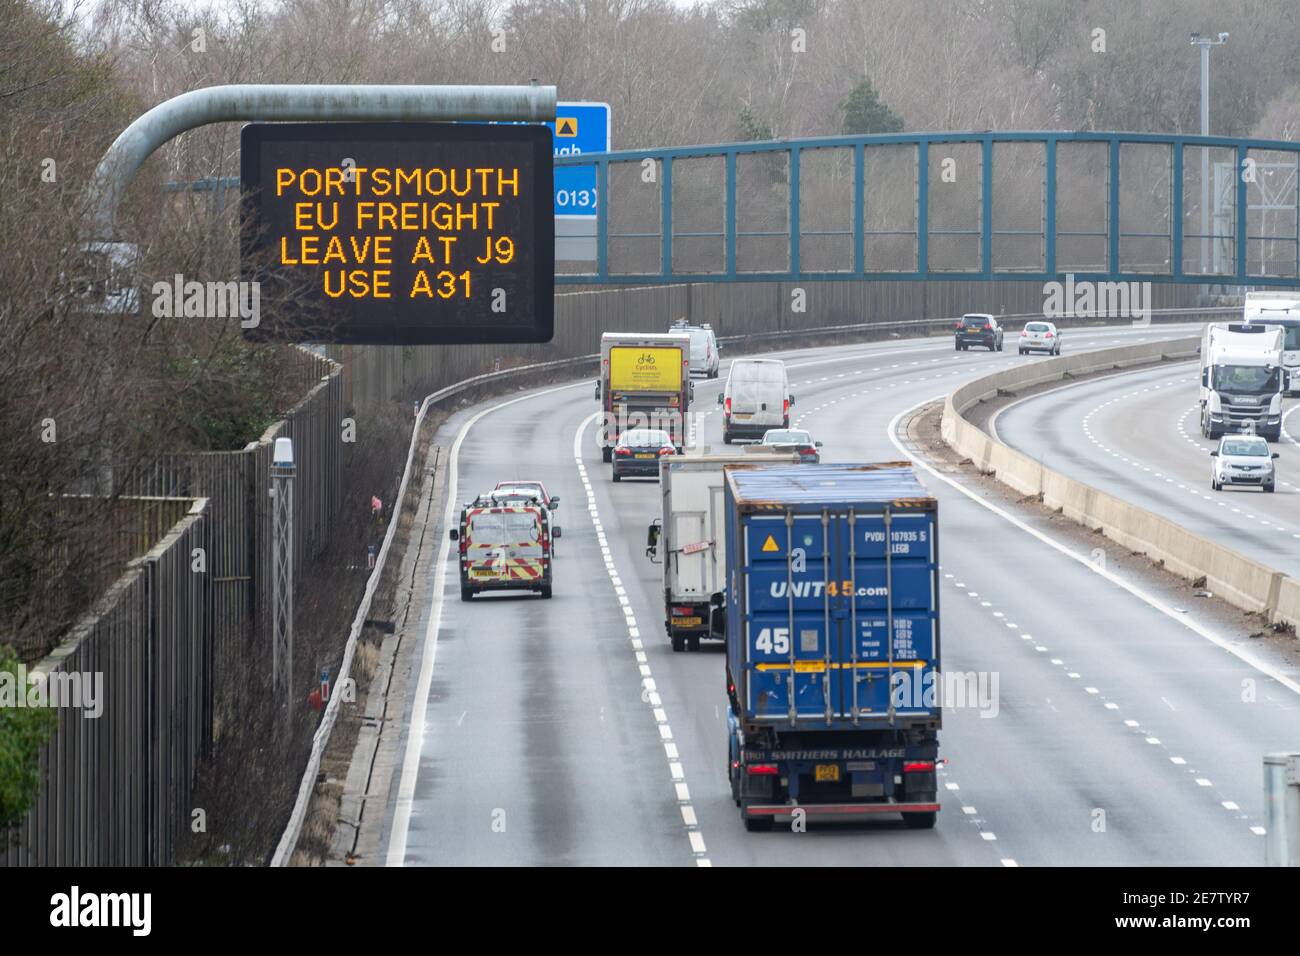 M3 Autobahnschild, Portsmouth EU Frachten verlassen bei J9 A31, Richtungen für LKW Richtung Europa nach dem Brexit, Januar 2021 England Großbritannien Stockfoto